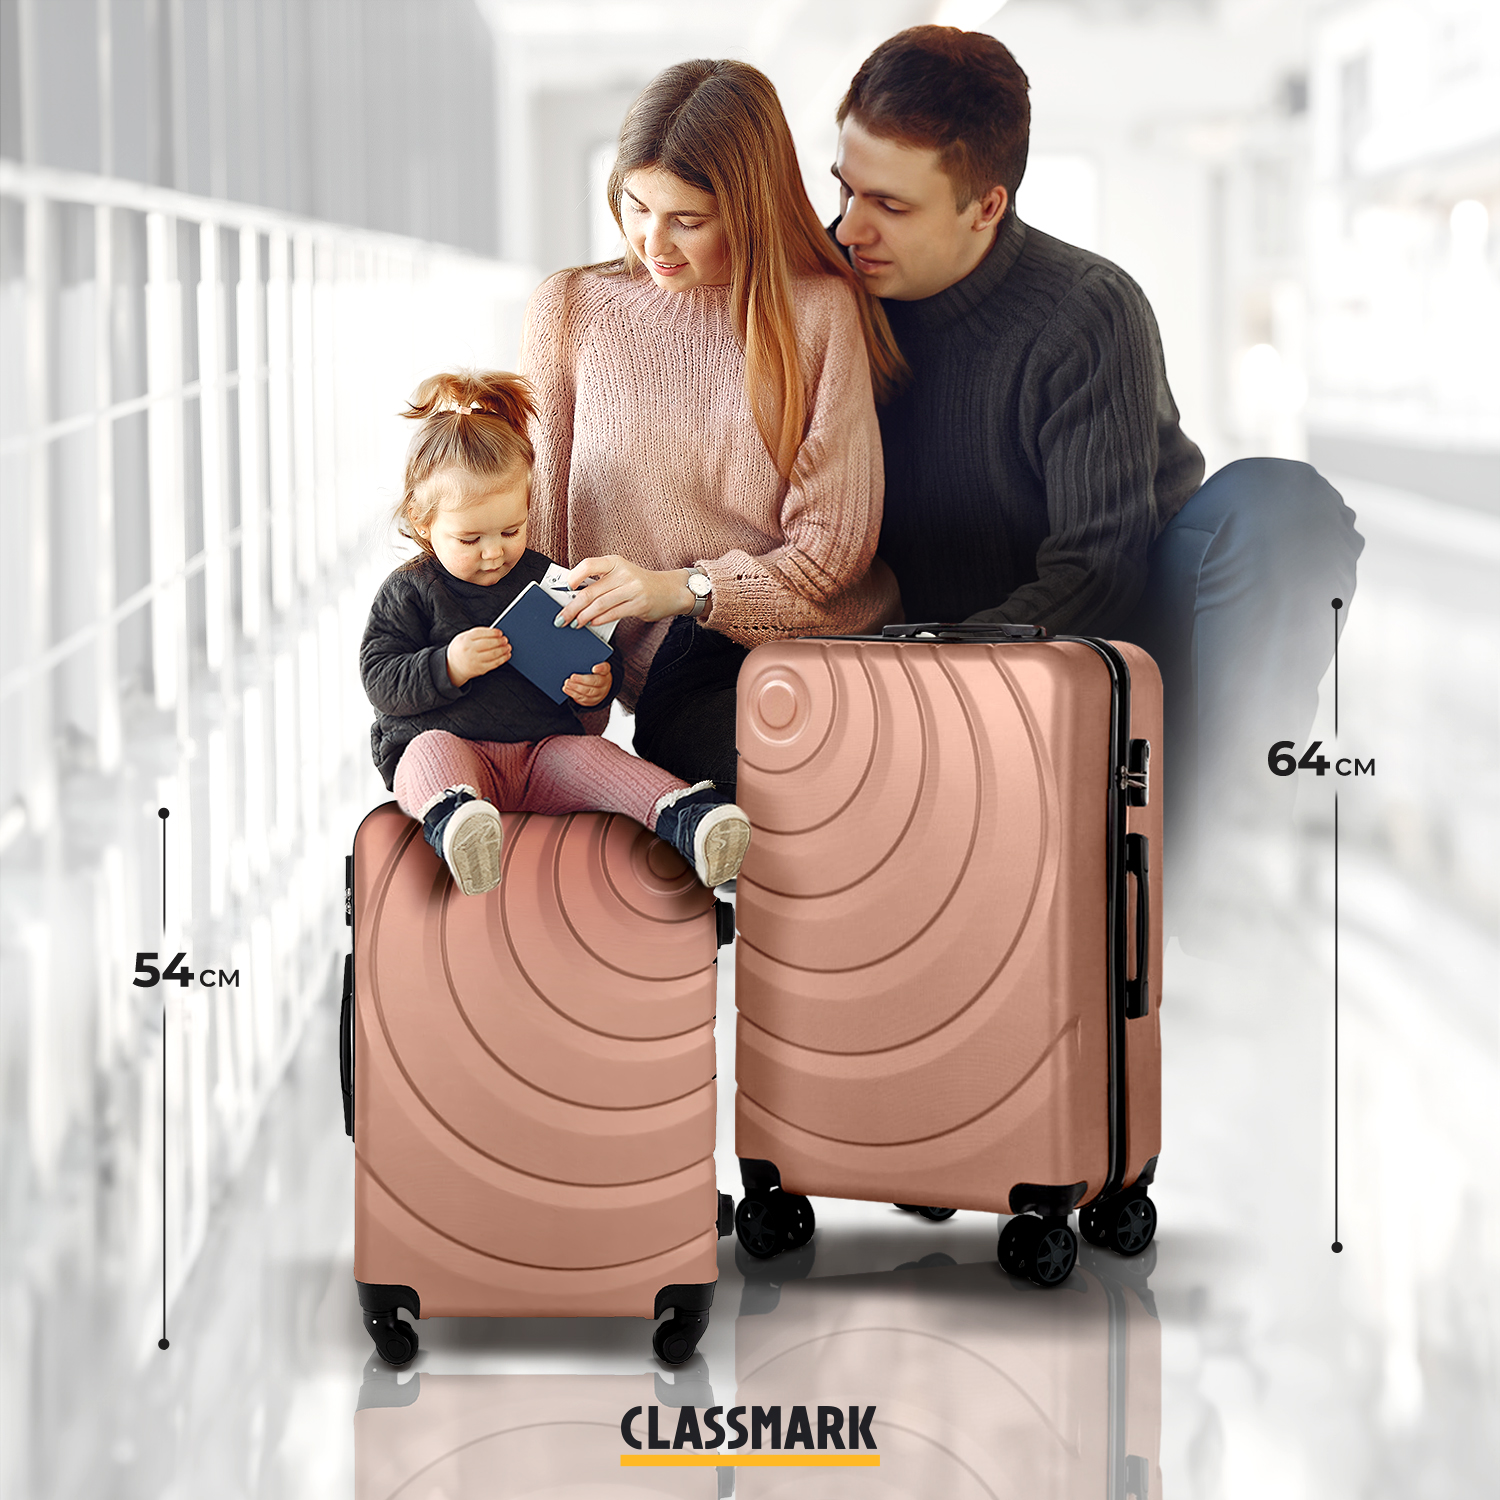 Комплект чемоданов унисекс Classmark 202209014004 пудровый, S/M - купить в Москве, цены на Мегамаркет | 600013496368